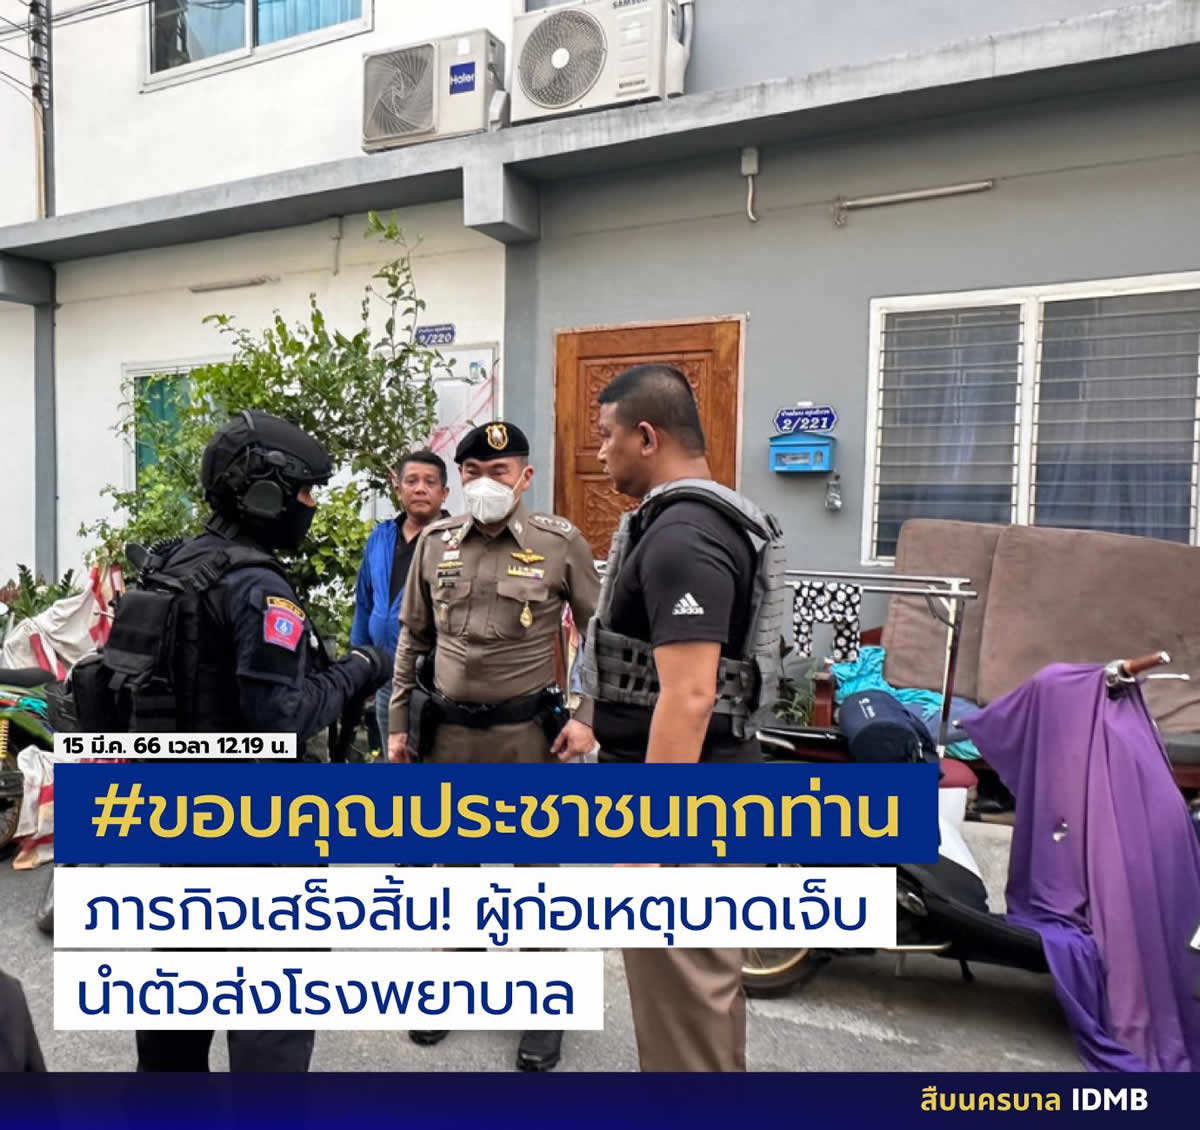 立て籠もり発砲警察官を逮捕、事件発生から24時間以上 | タイランド